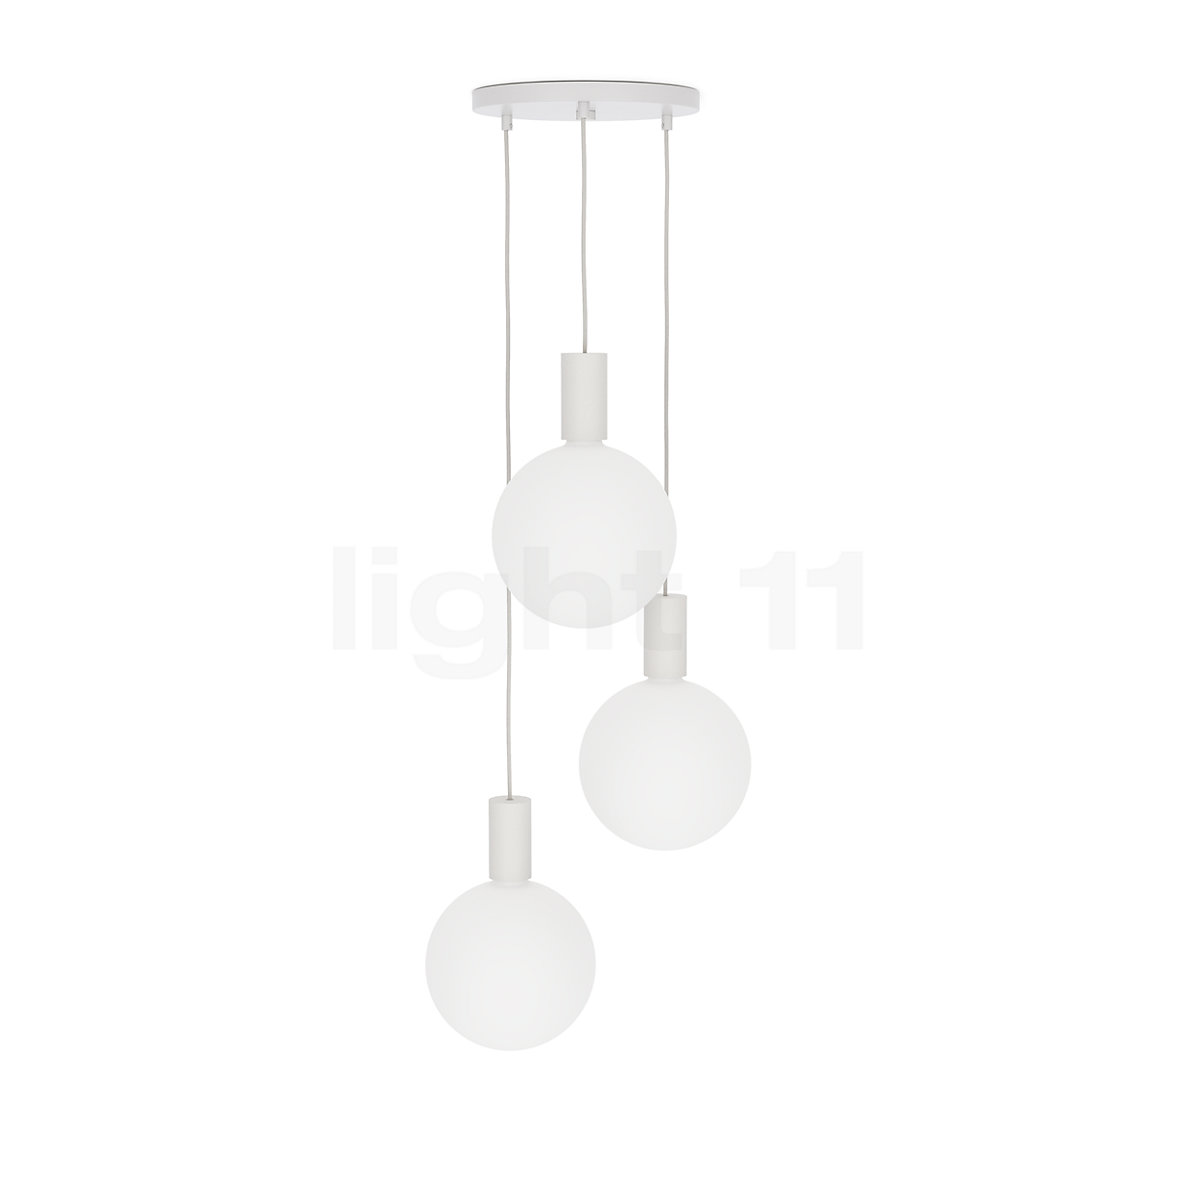 Ampoule LED G9 3,6W TALA - blanc